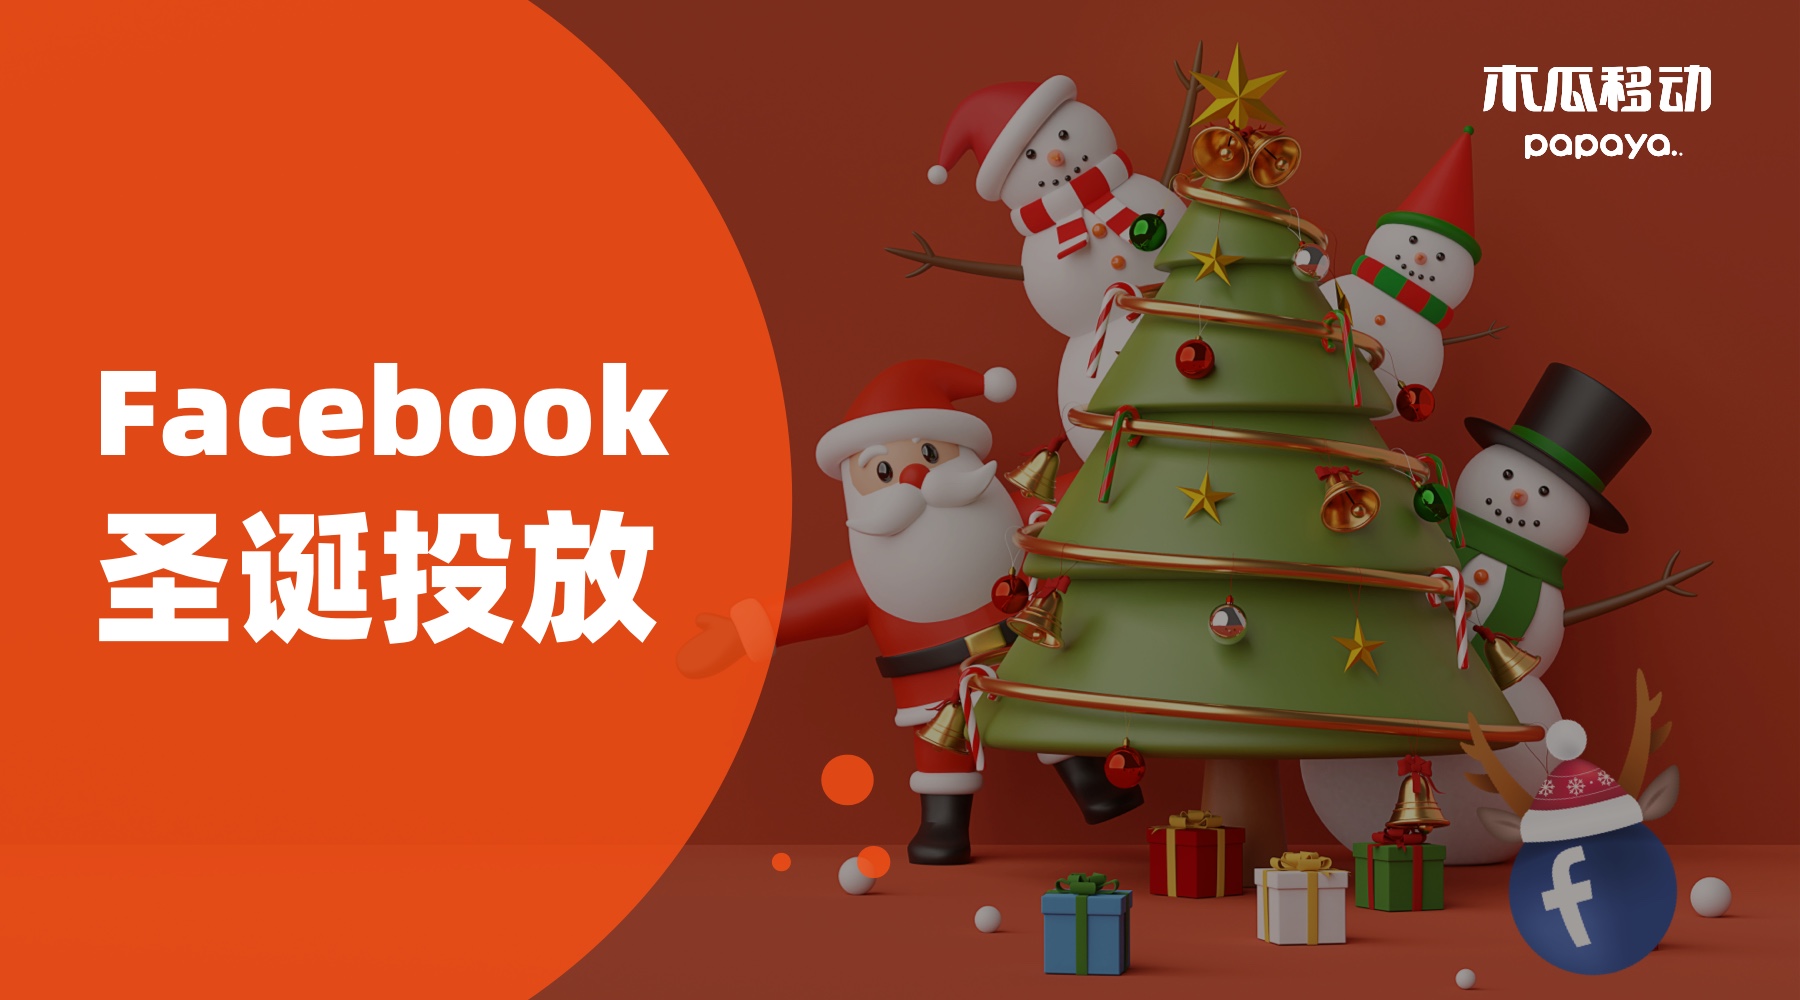 Facebook广告投放在圣诞节如何完美复刻大卖销量，以小博大